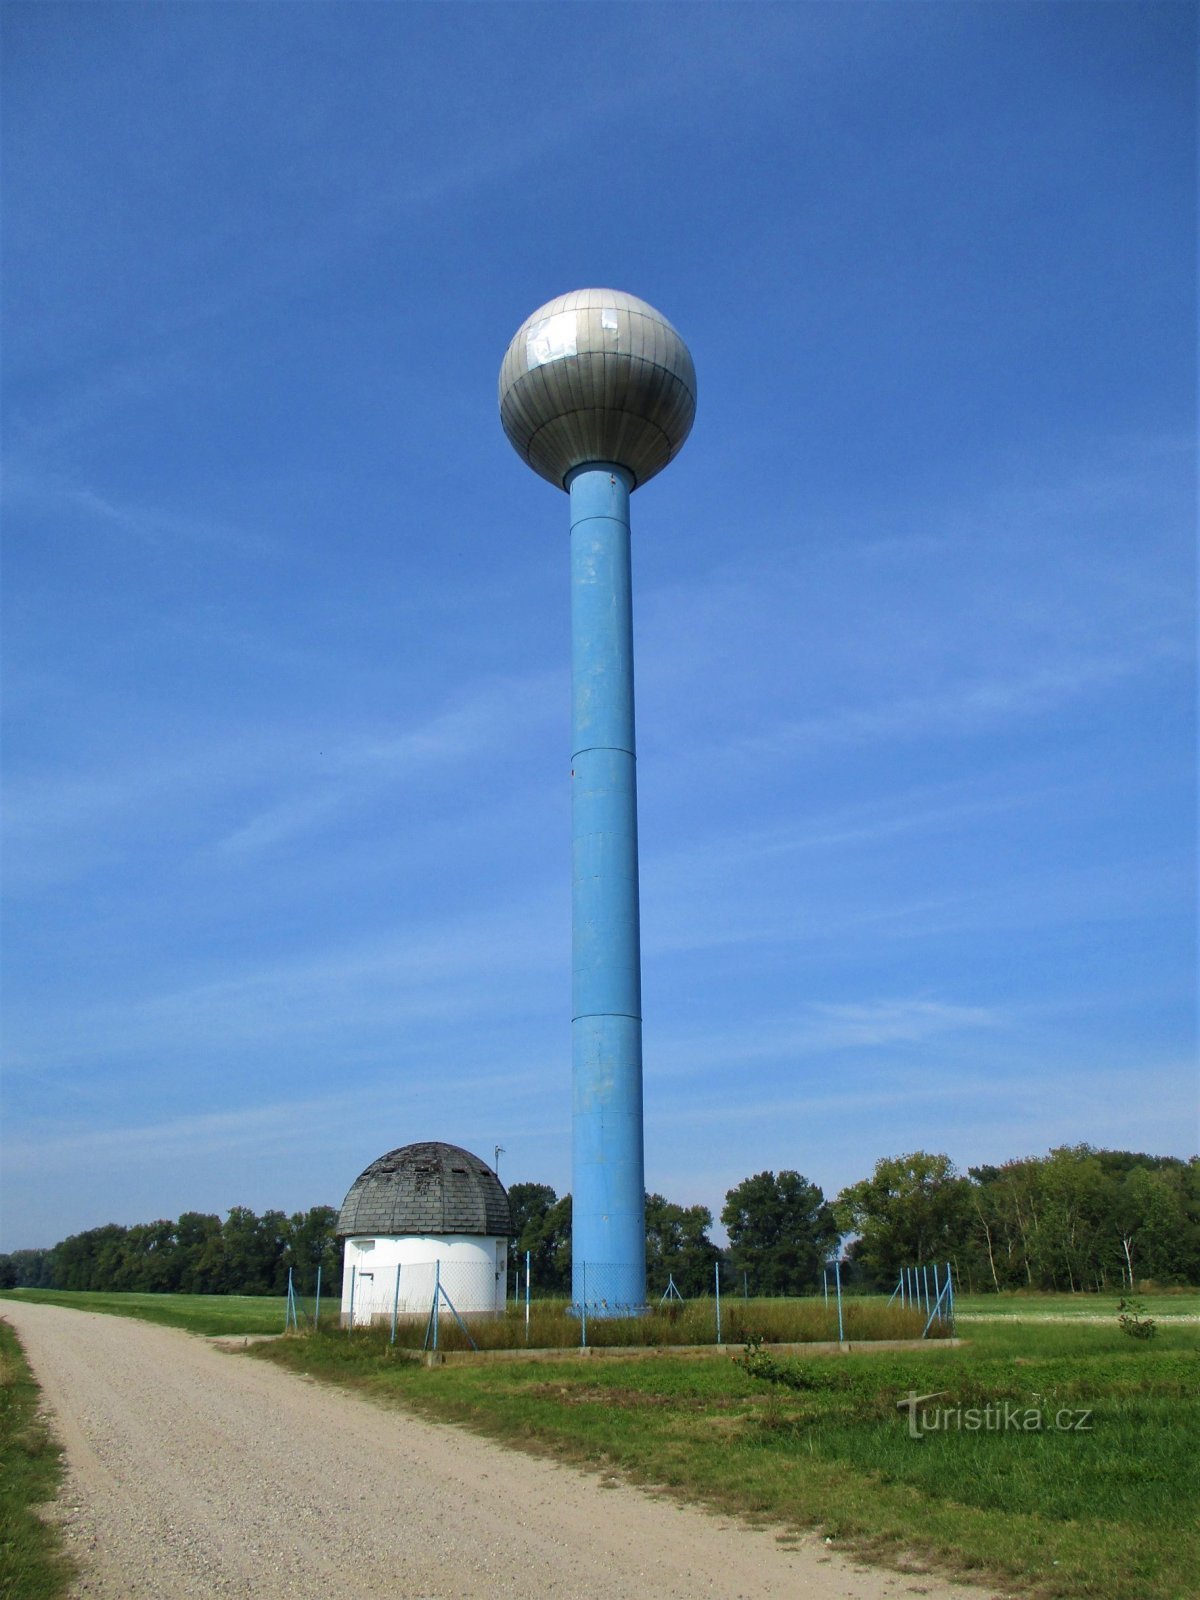 Réservoir d'eau de la tour Aquaglobus (Kratonohy, 13.9.2020/XNUMX/XNUMX)